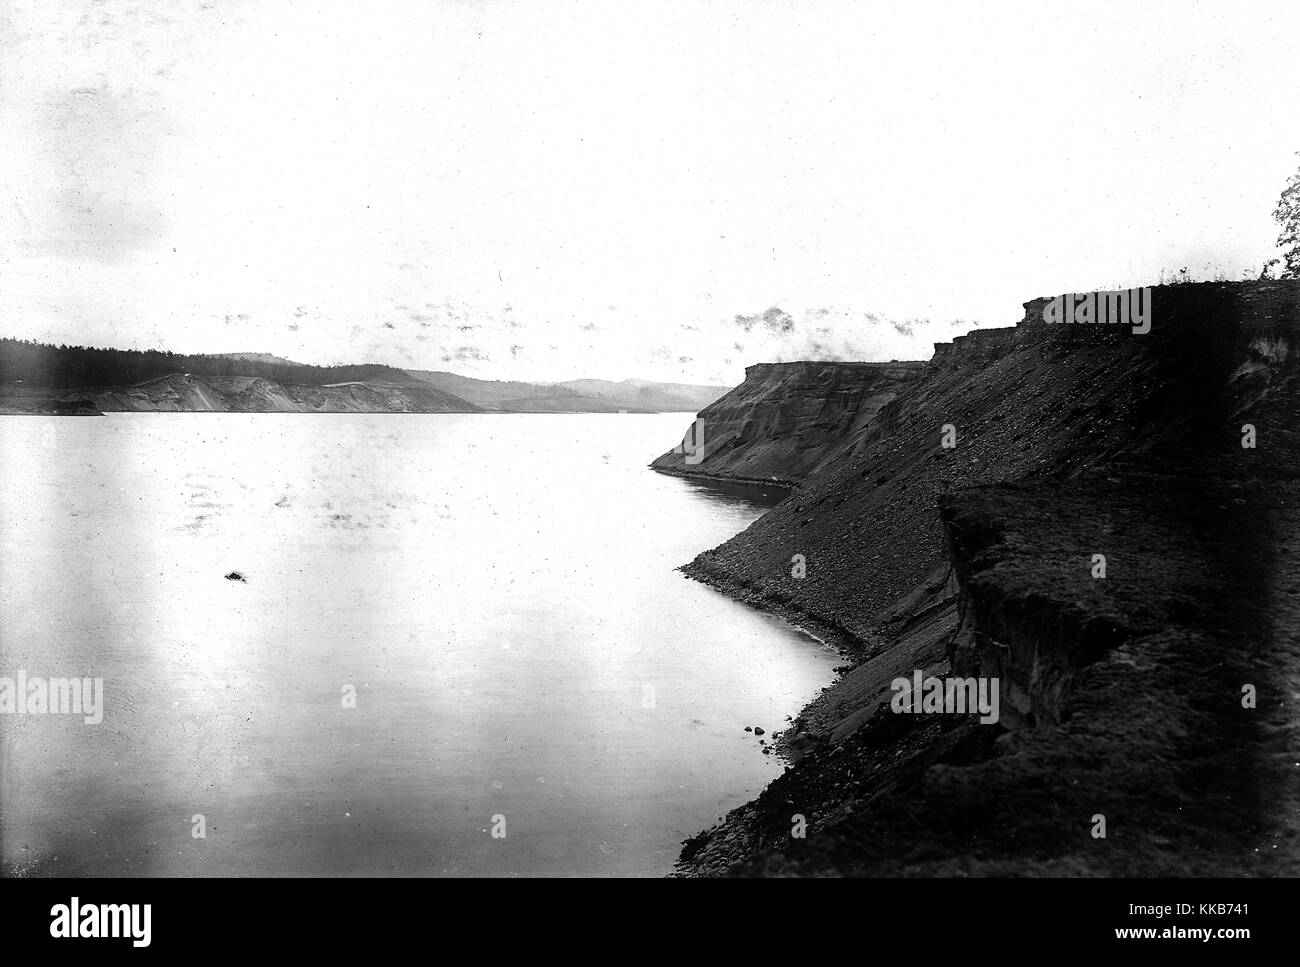 Die Terrassen des Gletschersees Nashua, felsige Felswände bilden beide Seiten des breiten Sees, Worcester County, Massachusetts. Bild mit freundlicher Genehmigung von W.C. Alden/USGS. 1906. Stockfoto